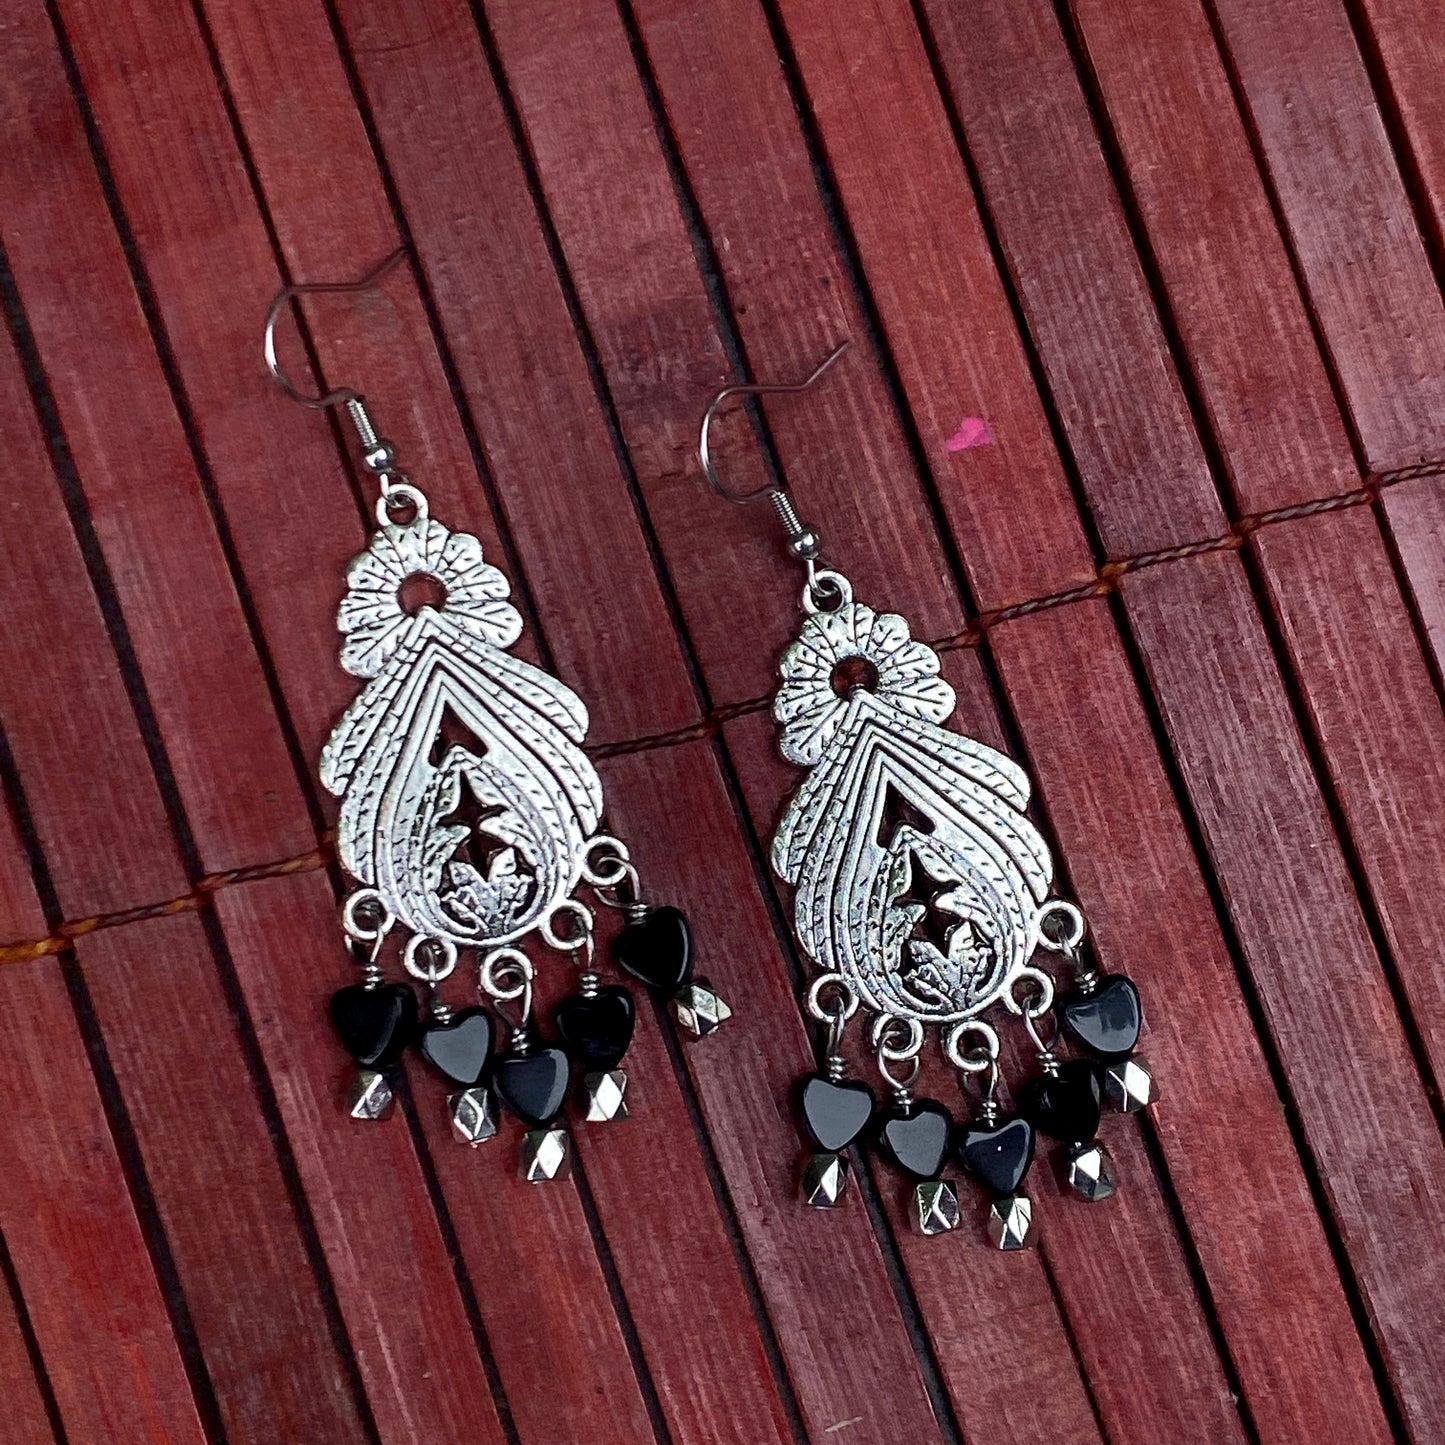 Onyx gemstone Chandalier Earrings